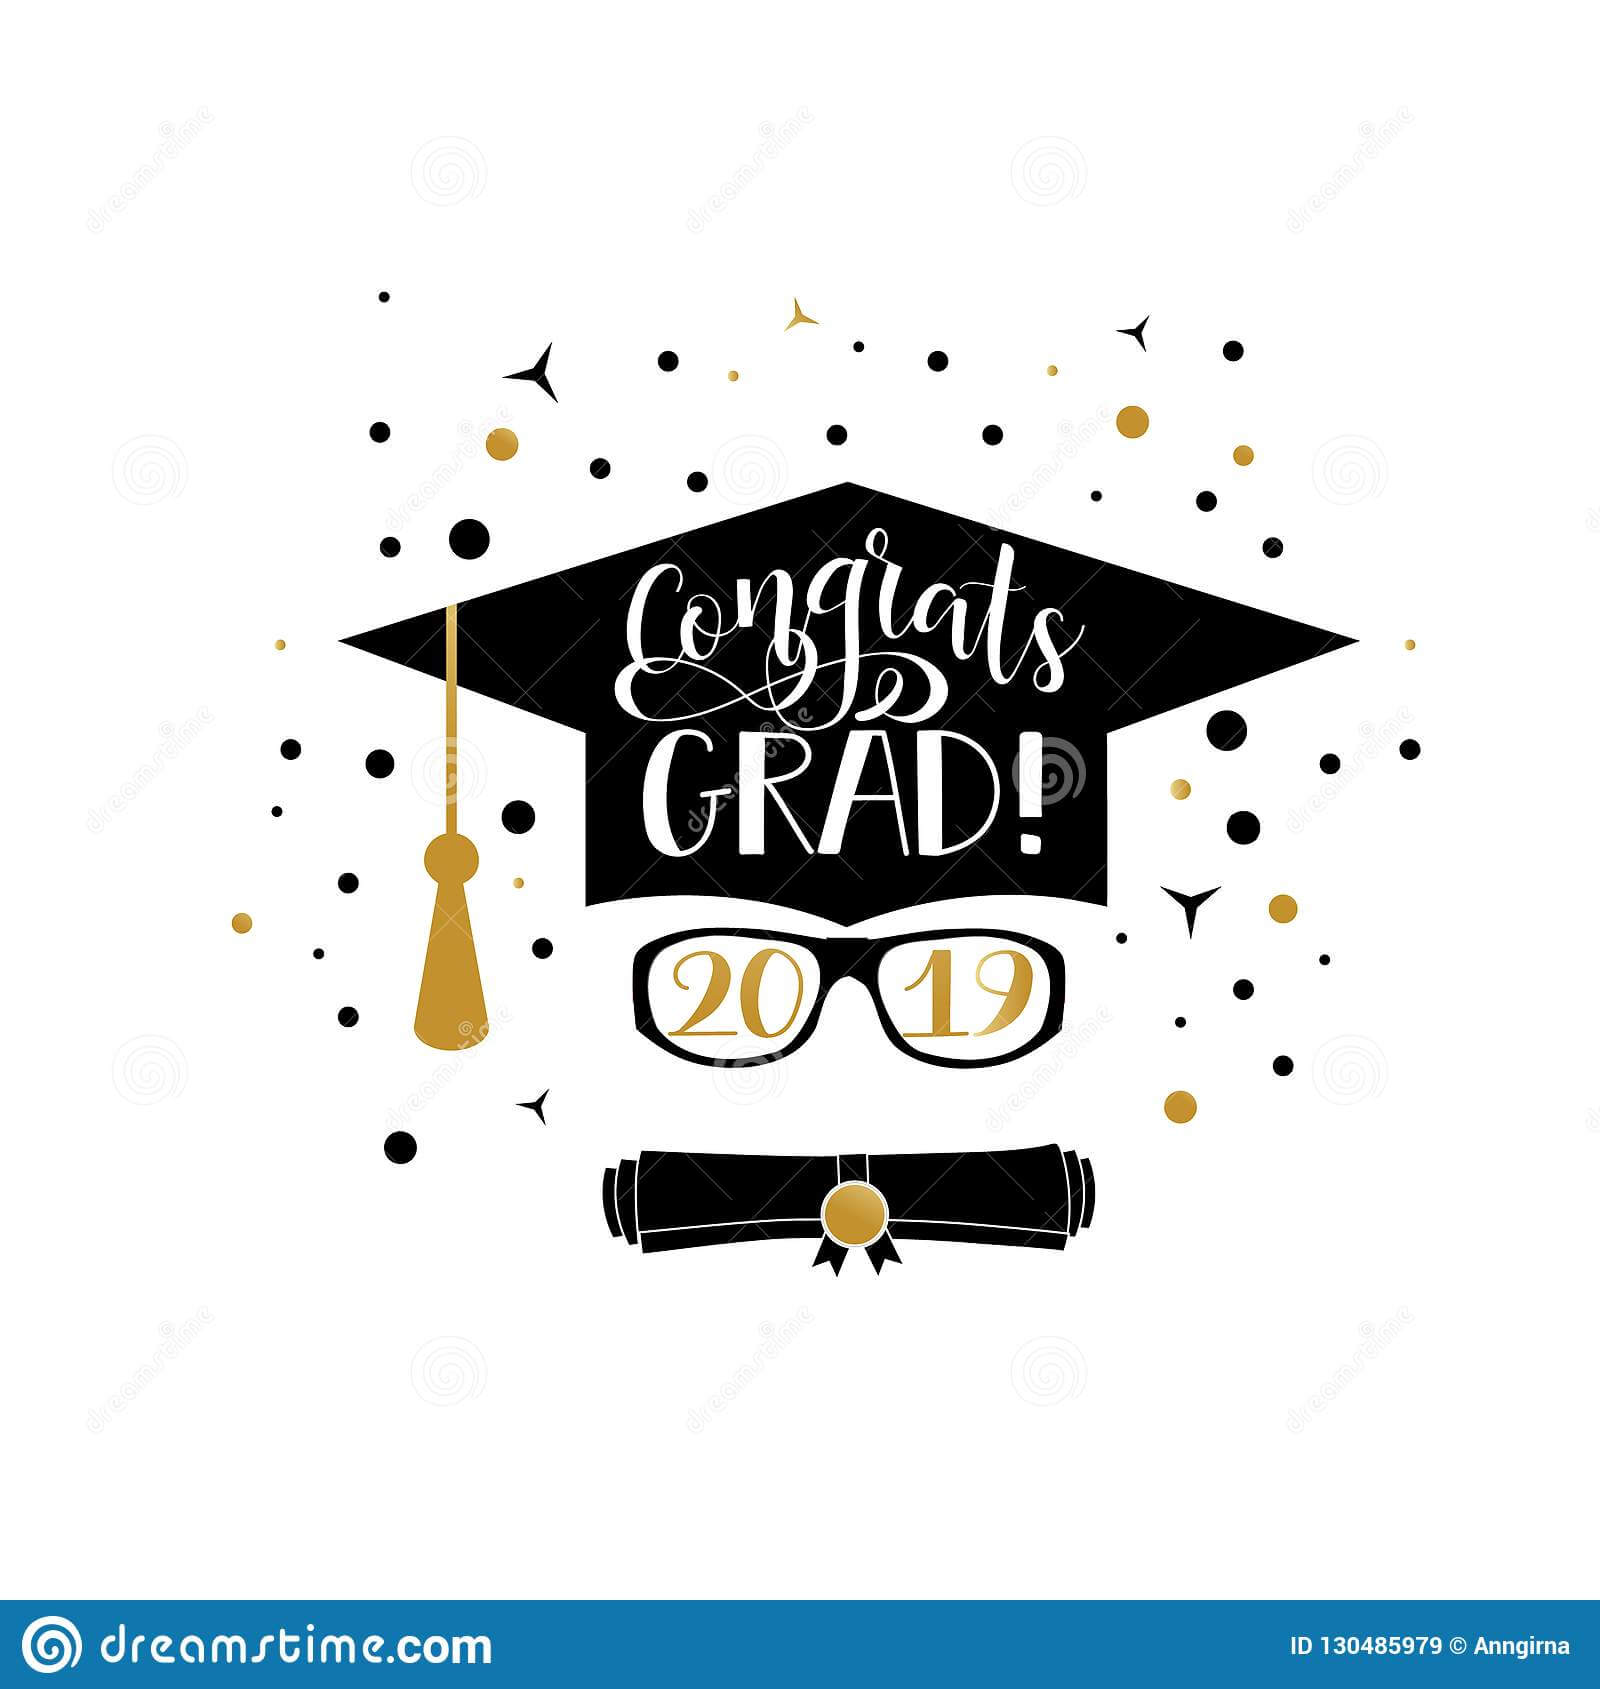 Congrats Grad 2019 Lettering. Congratulations Graduate Regarding Graduation Banner Template